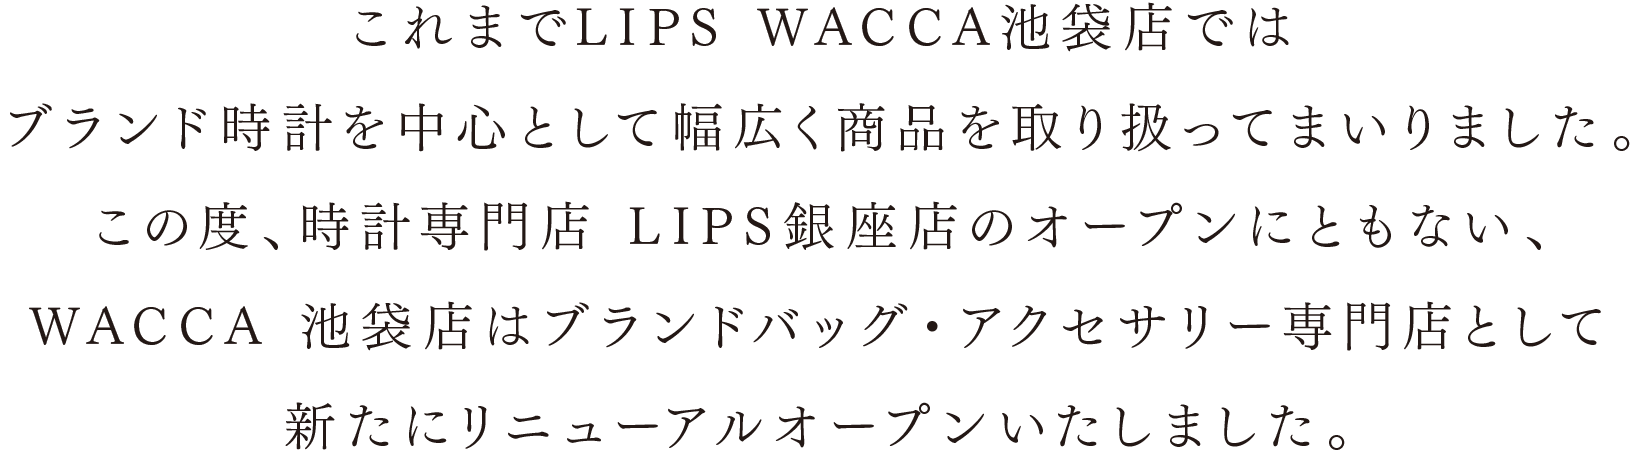 これまでLIPS WACCA池袋店ではブランド時計を中心として幅広く商品を取り扱ってまいりました。